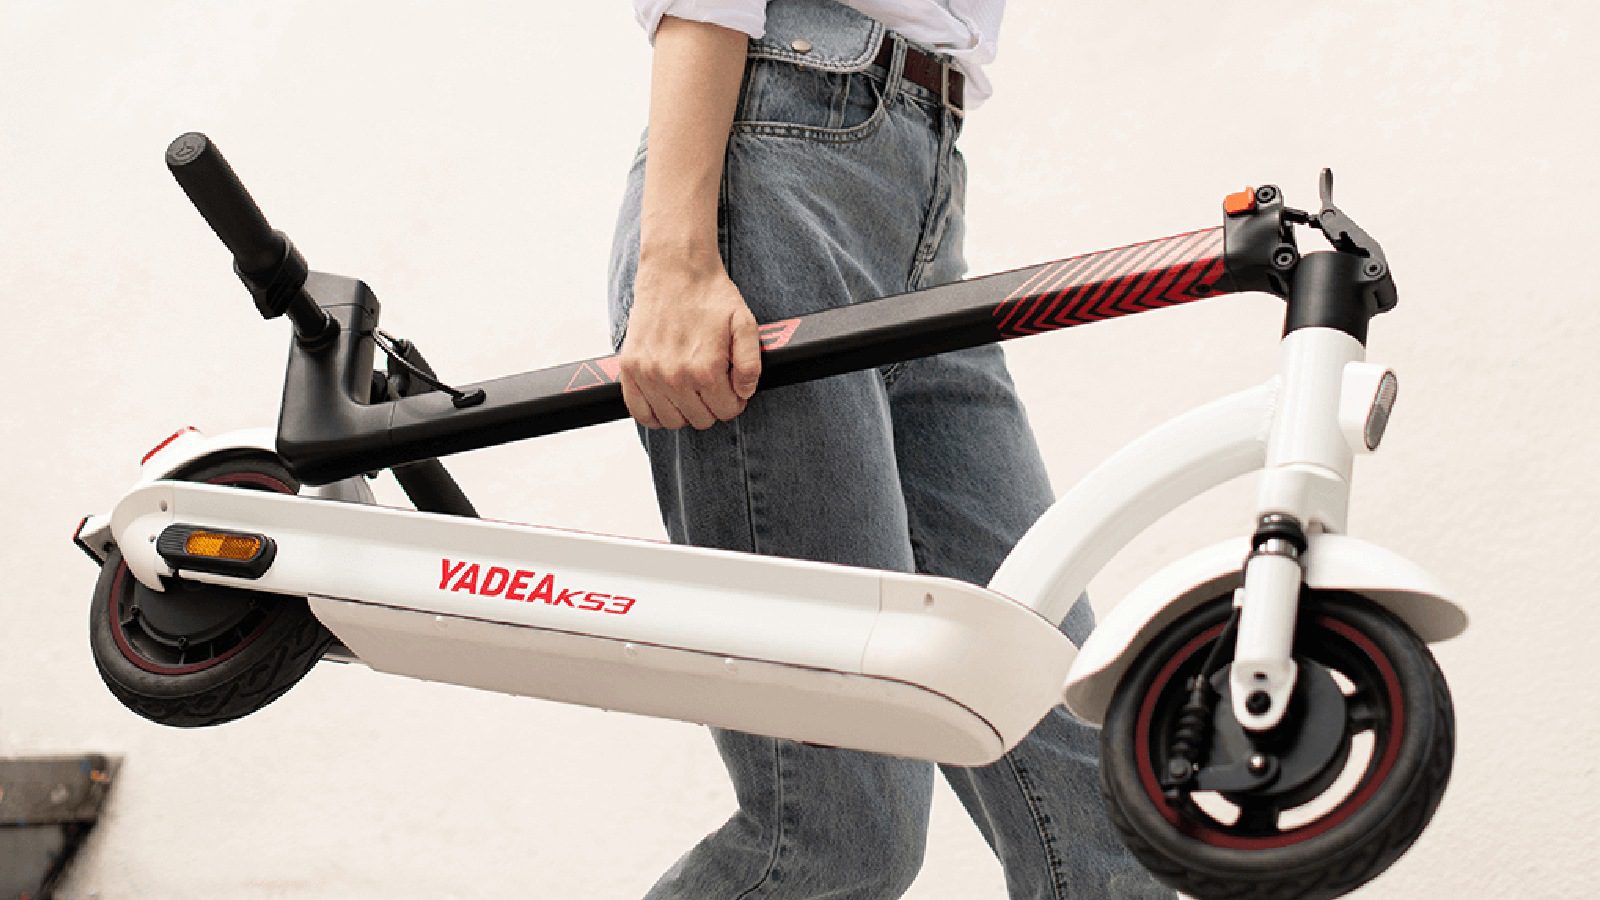 Yadea представляет новый электрический скутер KS3 за 569 долларов